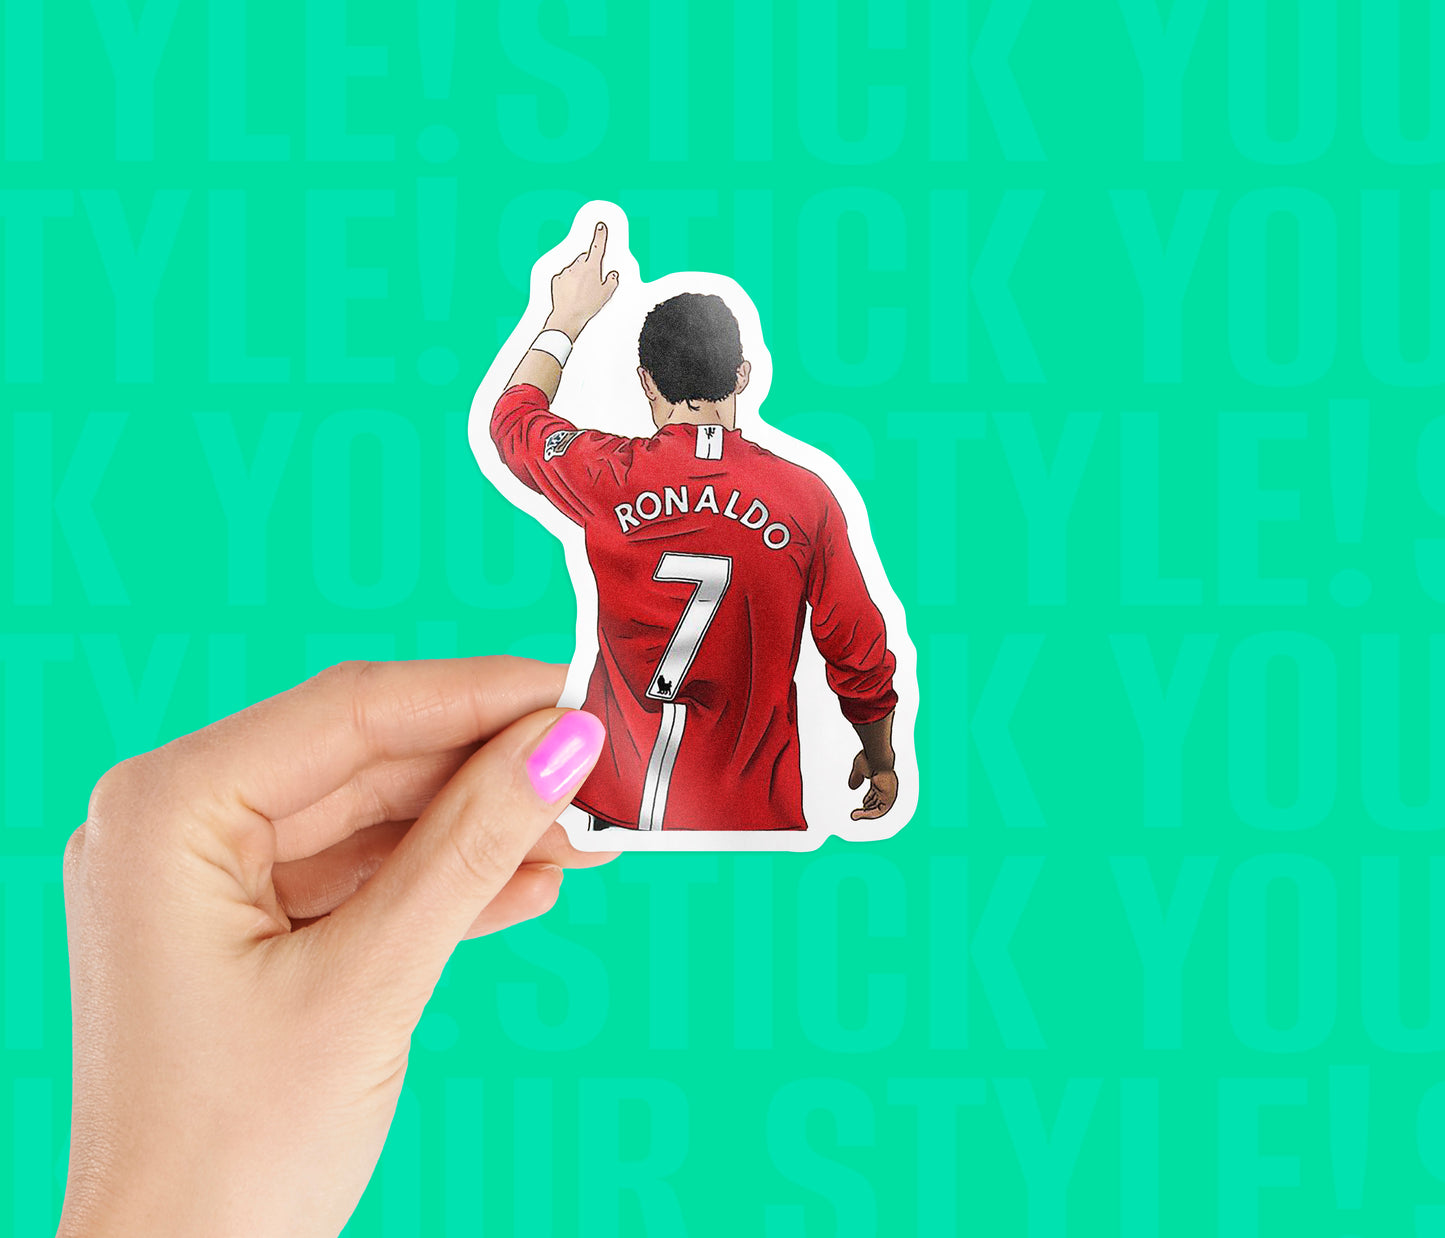 Cristiano Ronaldo MUFC Sticker